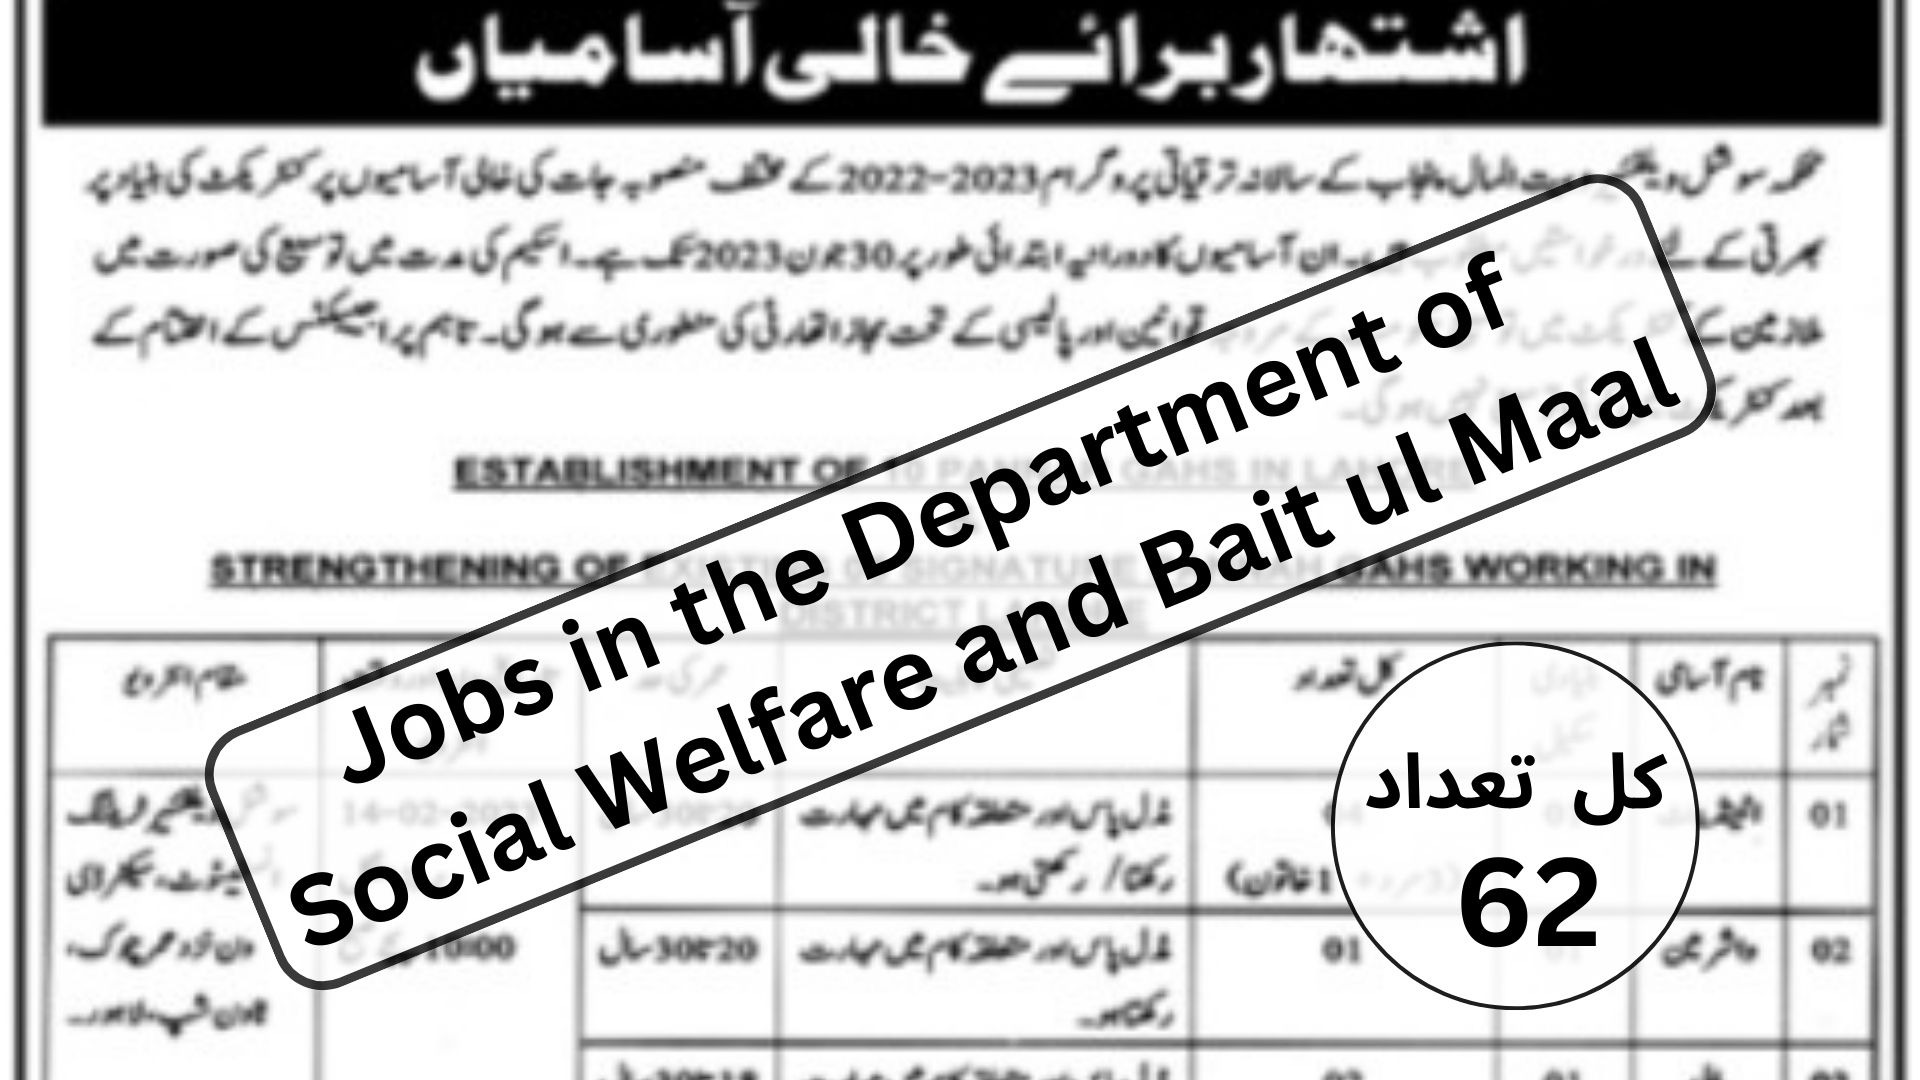 jobs-Social-Welfare-Bait-ul-Maal